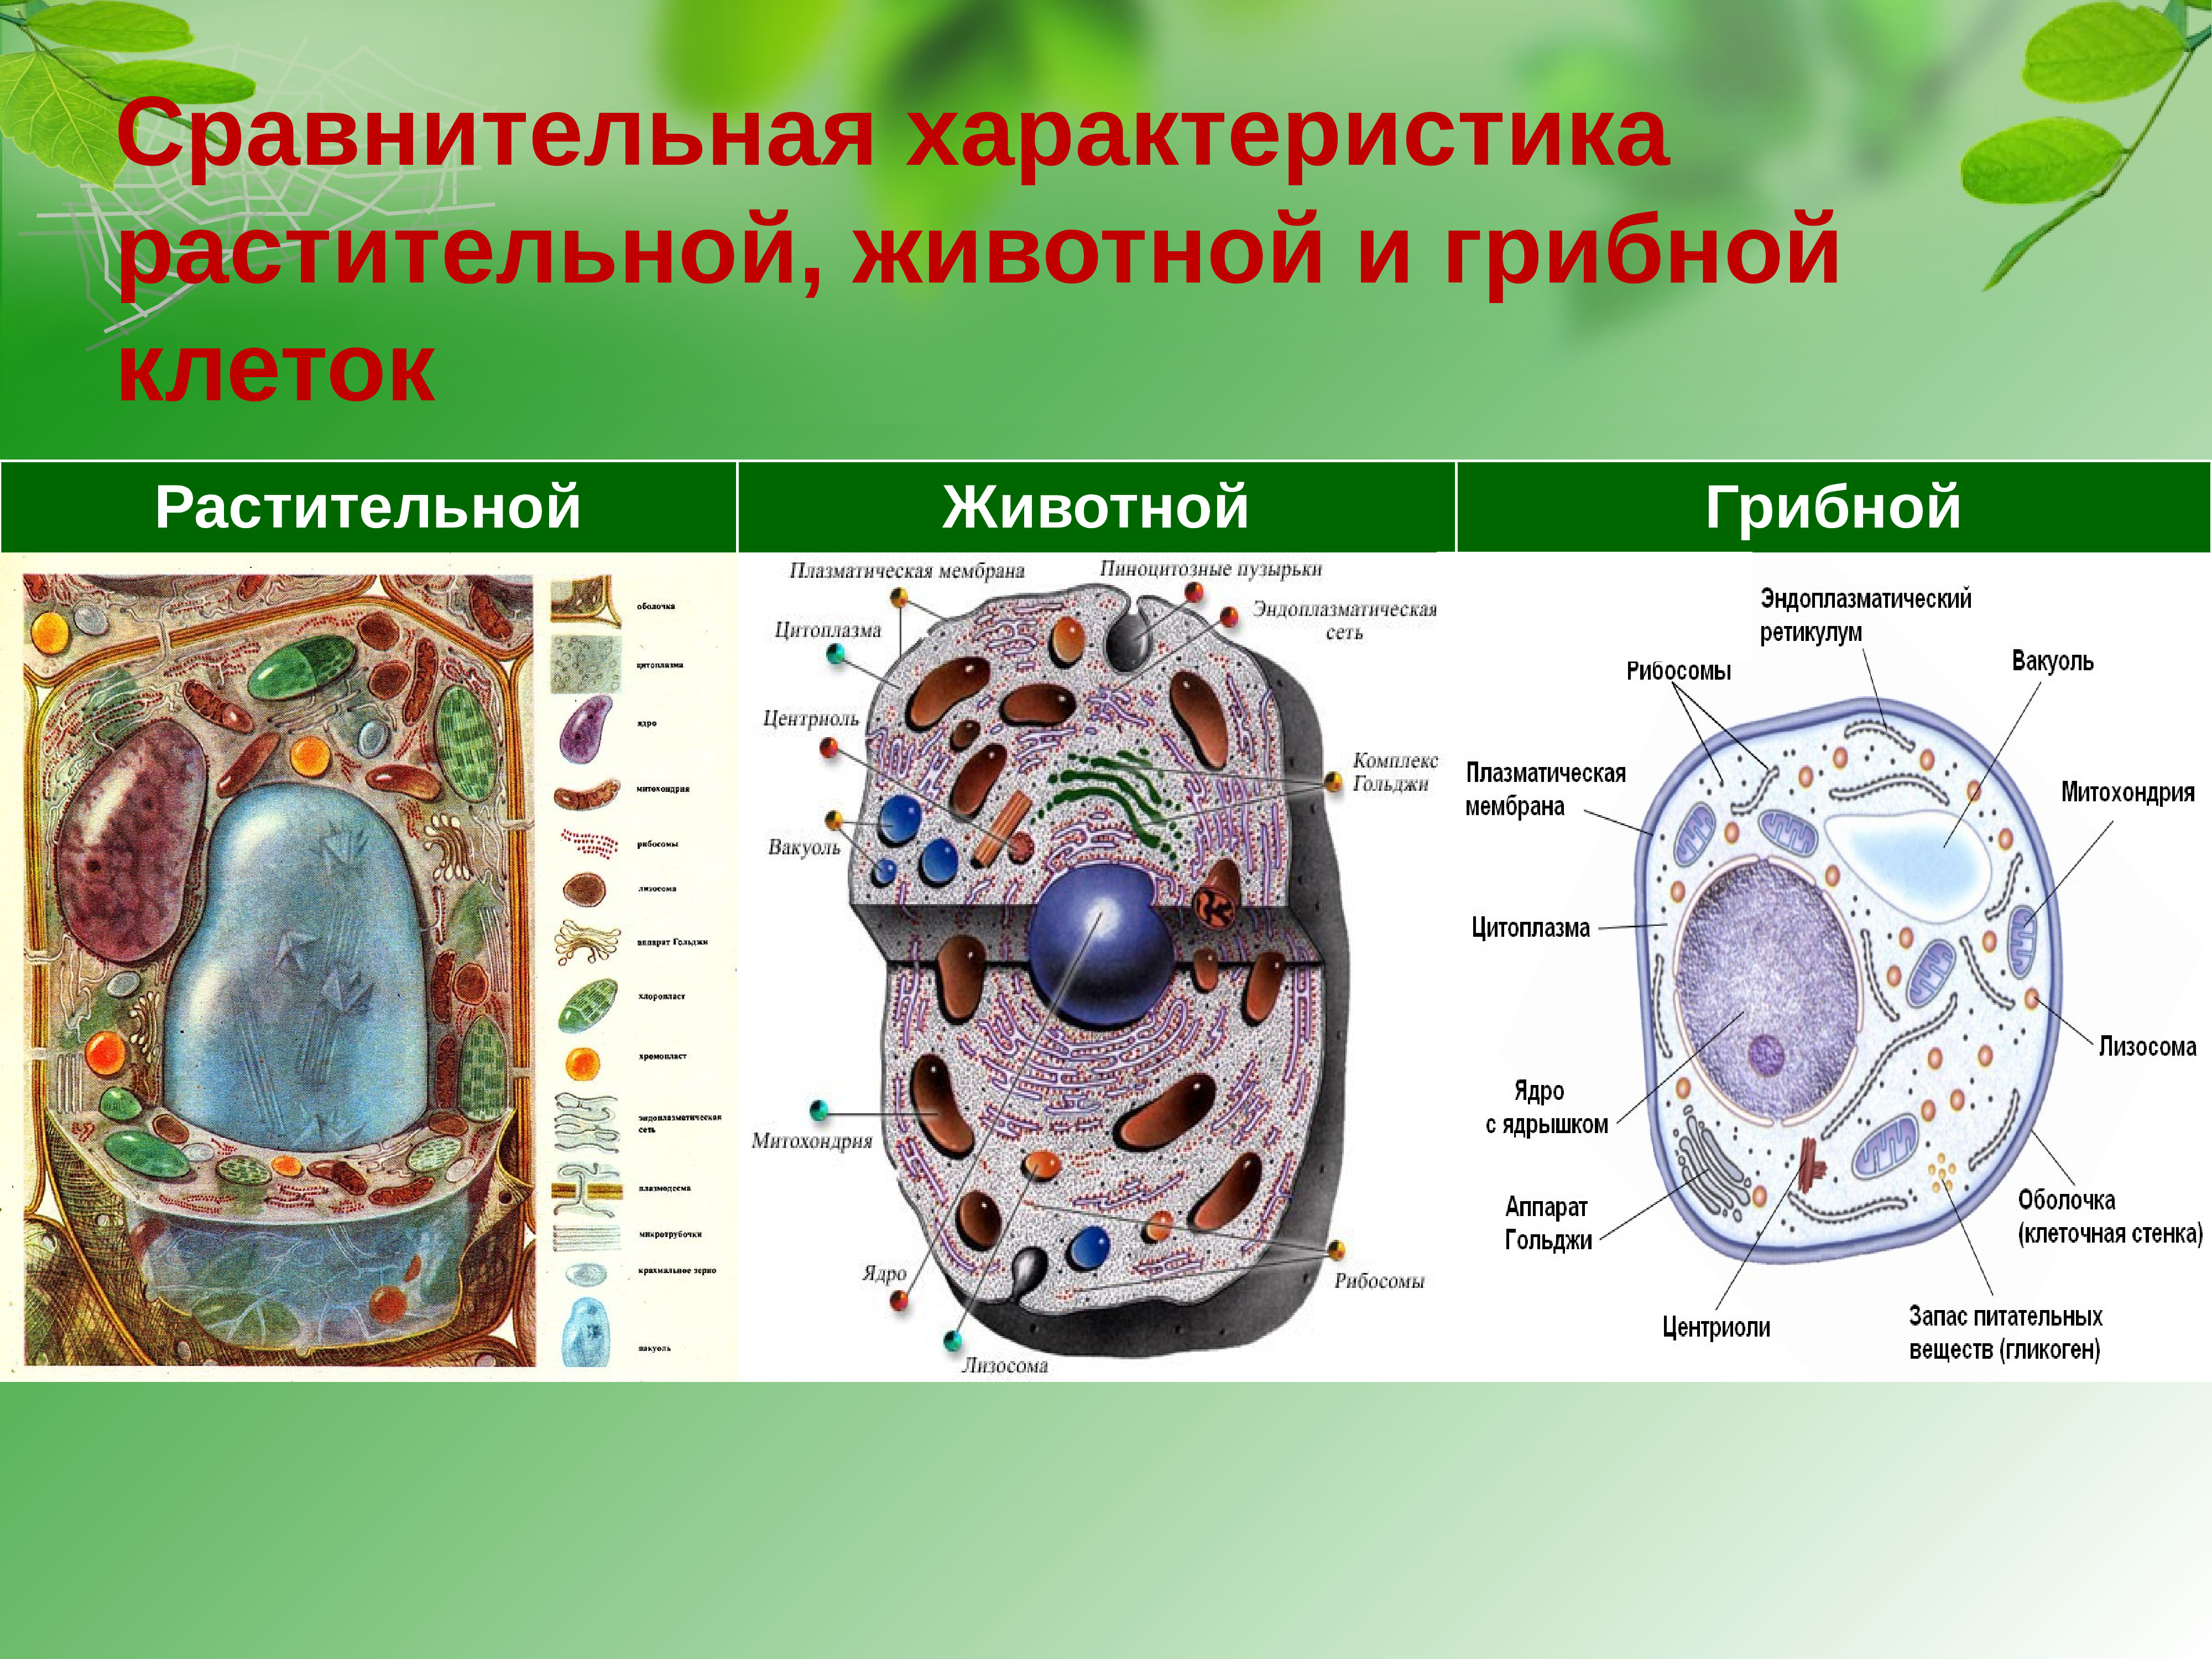 Грибная клетка отличия от растительной. Строение эукариотической клетки животного и растения гриба. Сравнить строение клетки растений и грибов. Отличие клетки грибов от растений. Эукариотическая клетка грибная.